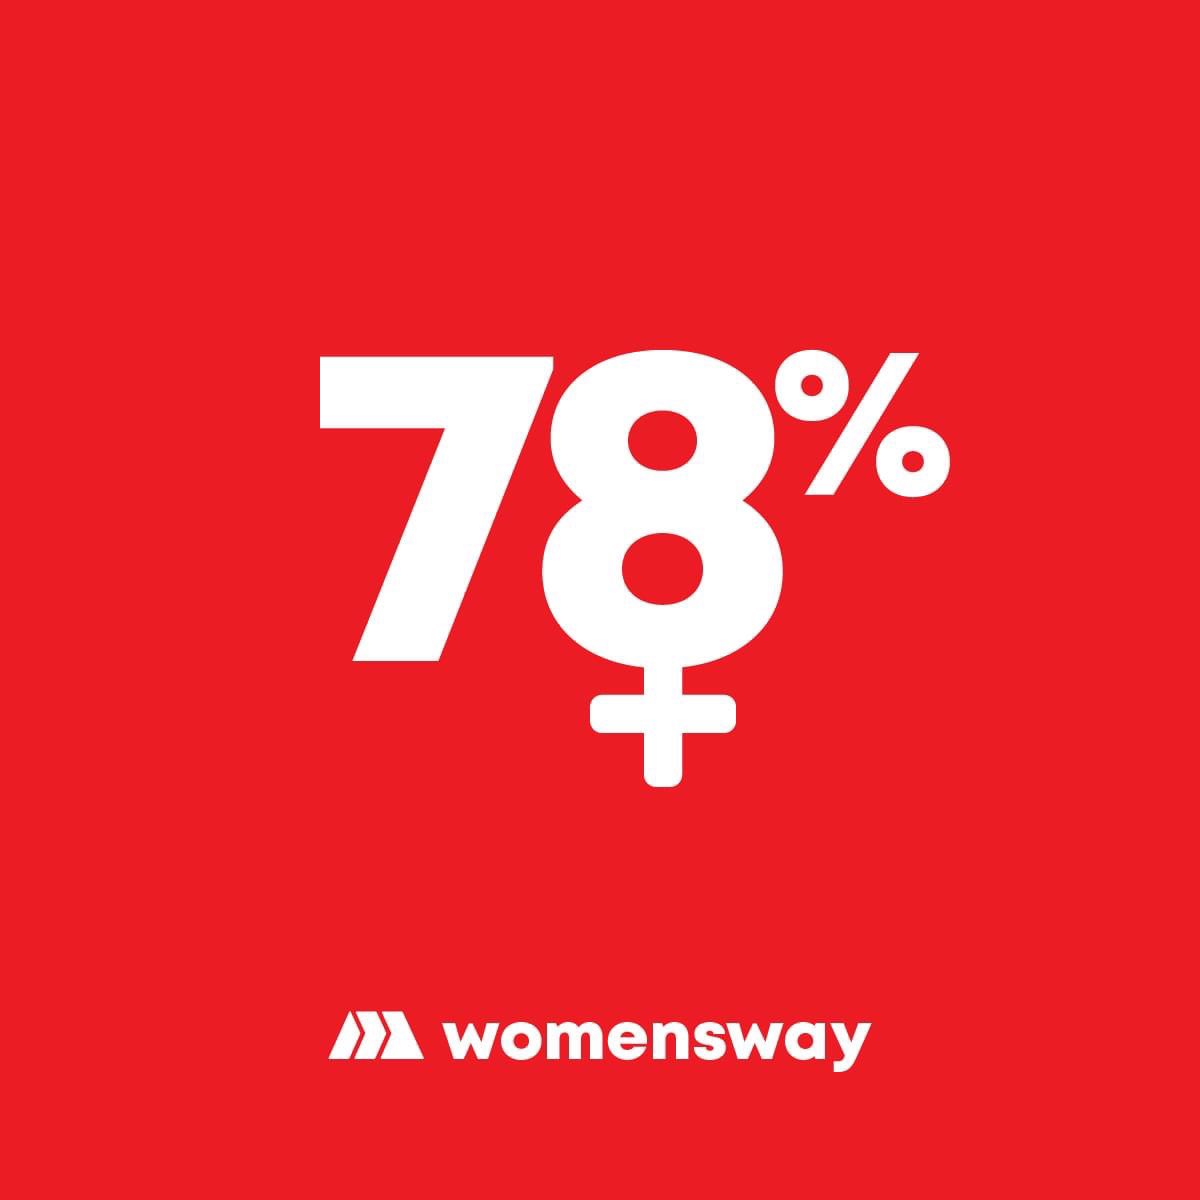 Το 78% των ανθρώπων της Marketway αποτελείται από δημιουργικές, δυναμικές και αποφασιστικές γυναίκες. Γιορτάζουμε την Παγκόσμια Ημέρα της Γυναίκας σε ρυθμούς womensway! 👩💟

#MarketwayPublicis #InternationalWomensDay #womensway